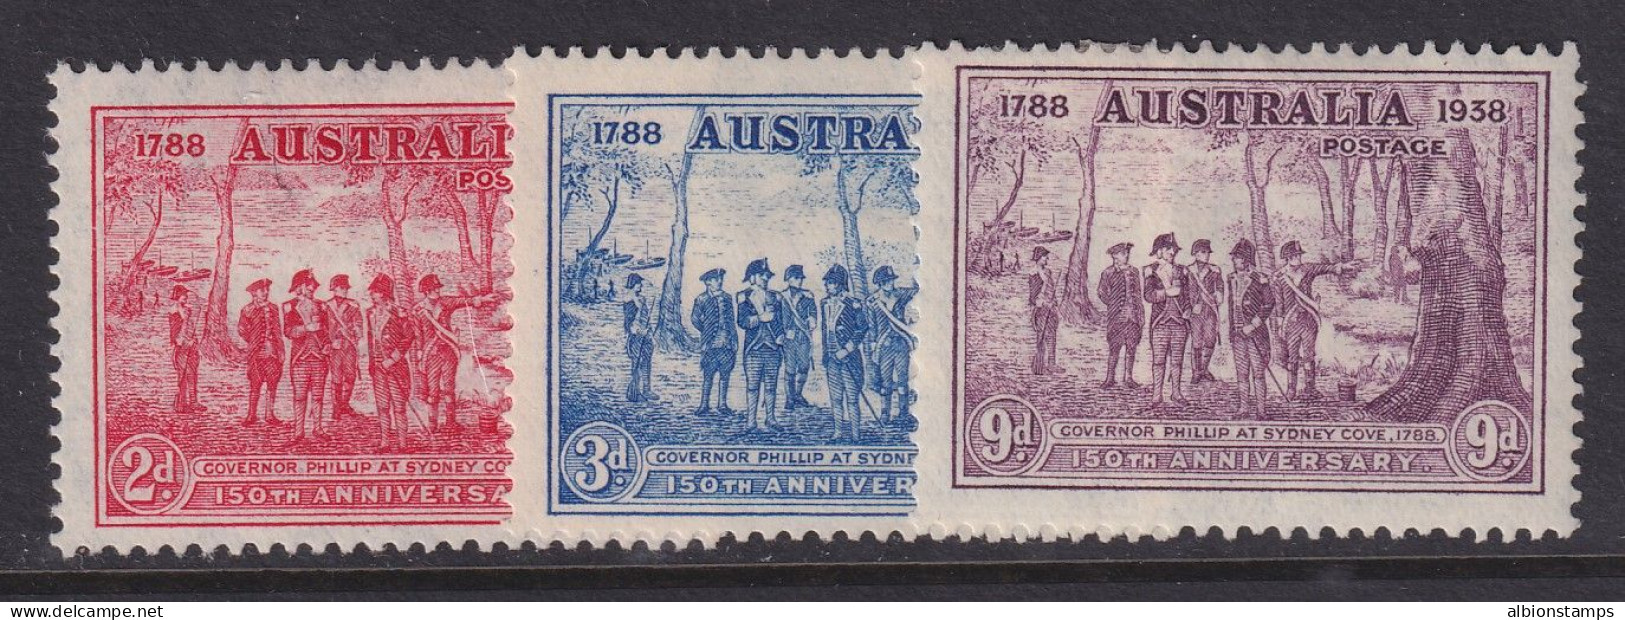 Australia, Scott 163-165 (SG 193-195), MHR - Mint Stamps